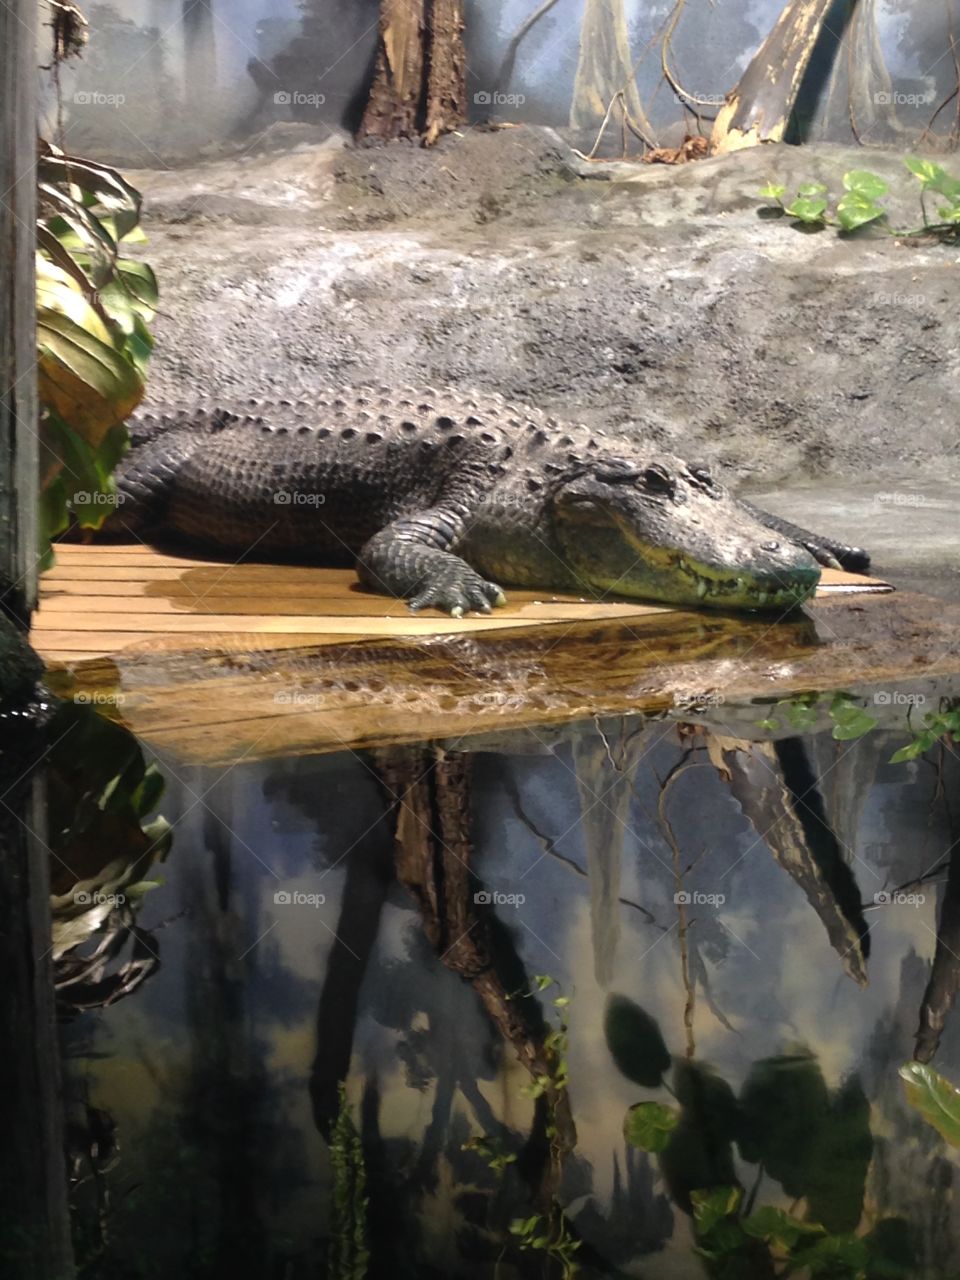 Alligator. Dubuque River museum and aquarium 